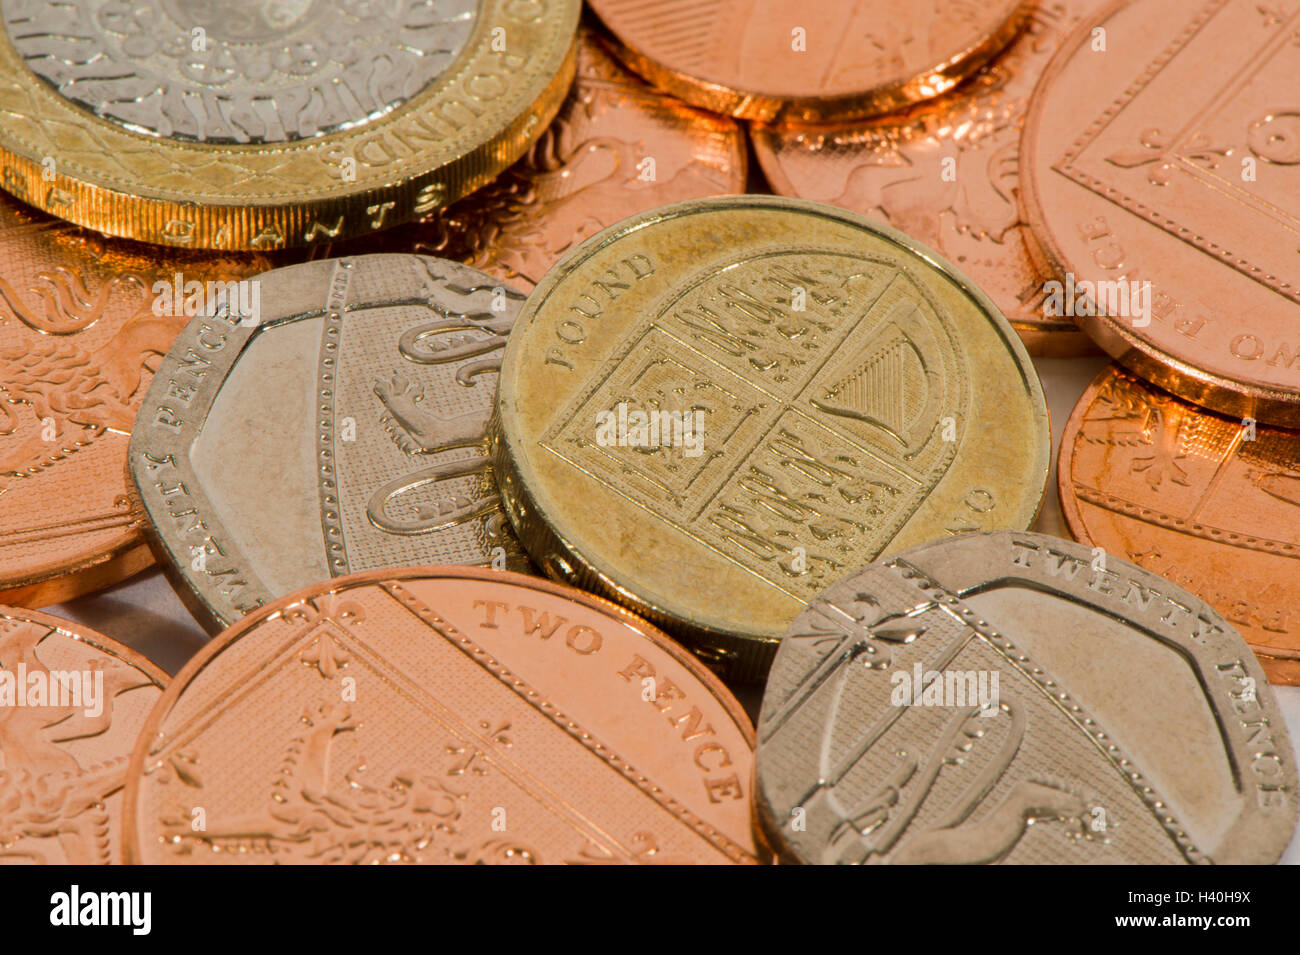 Close-up dettaglio del denaro - in corso la sterlina britannica monete in vari tagli, sia di rame e di argento - £ 2, £1, 20p, 2p. Foto Stock